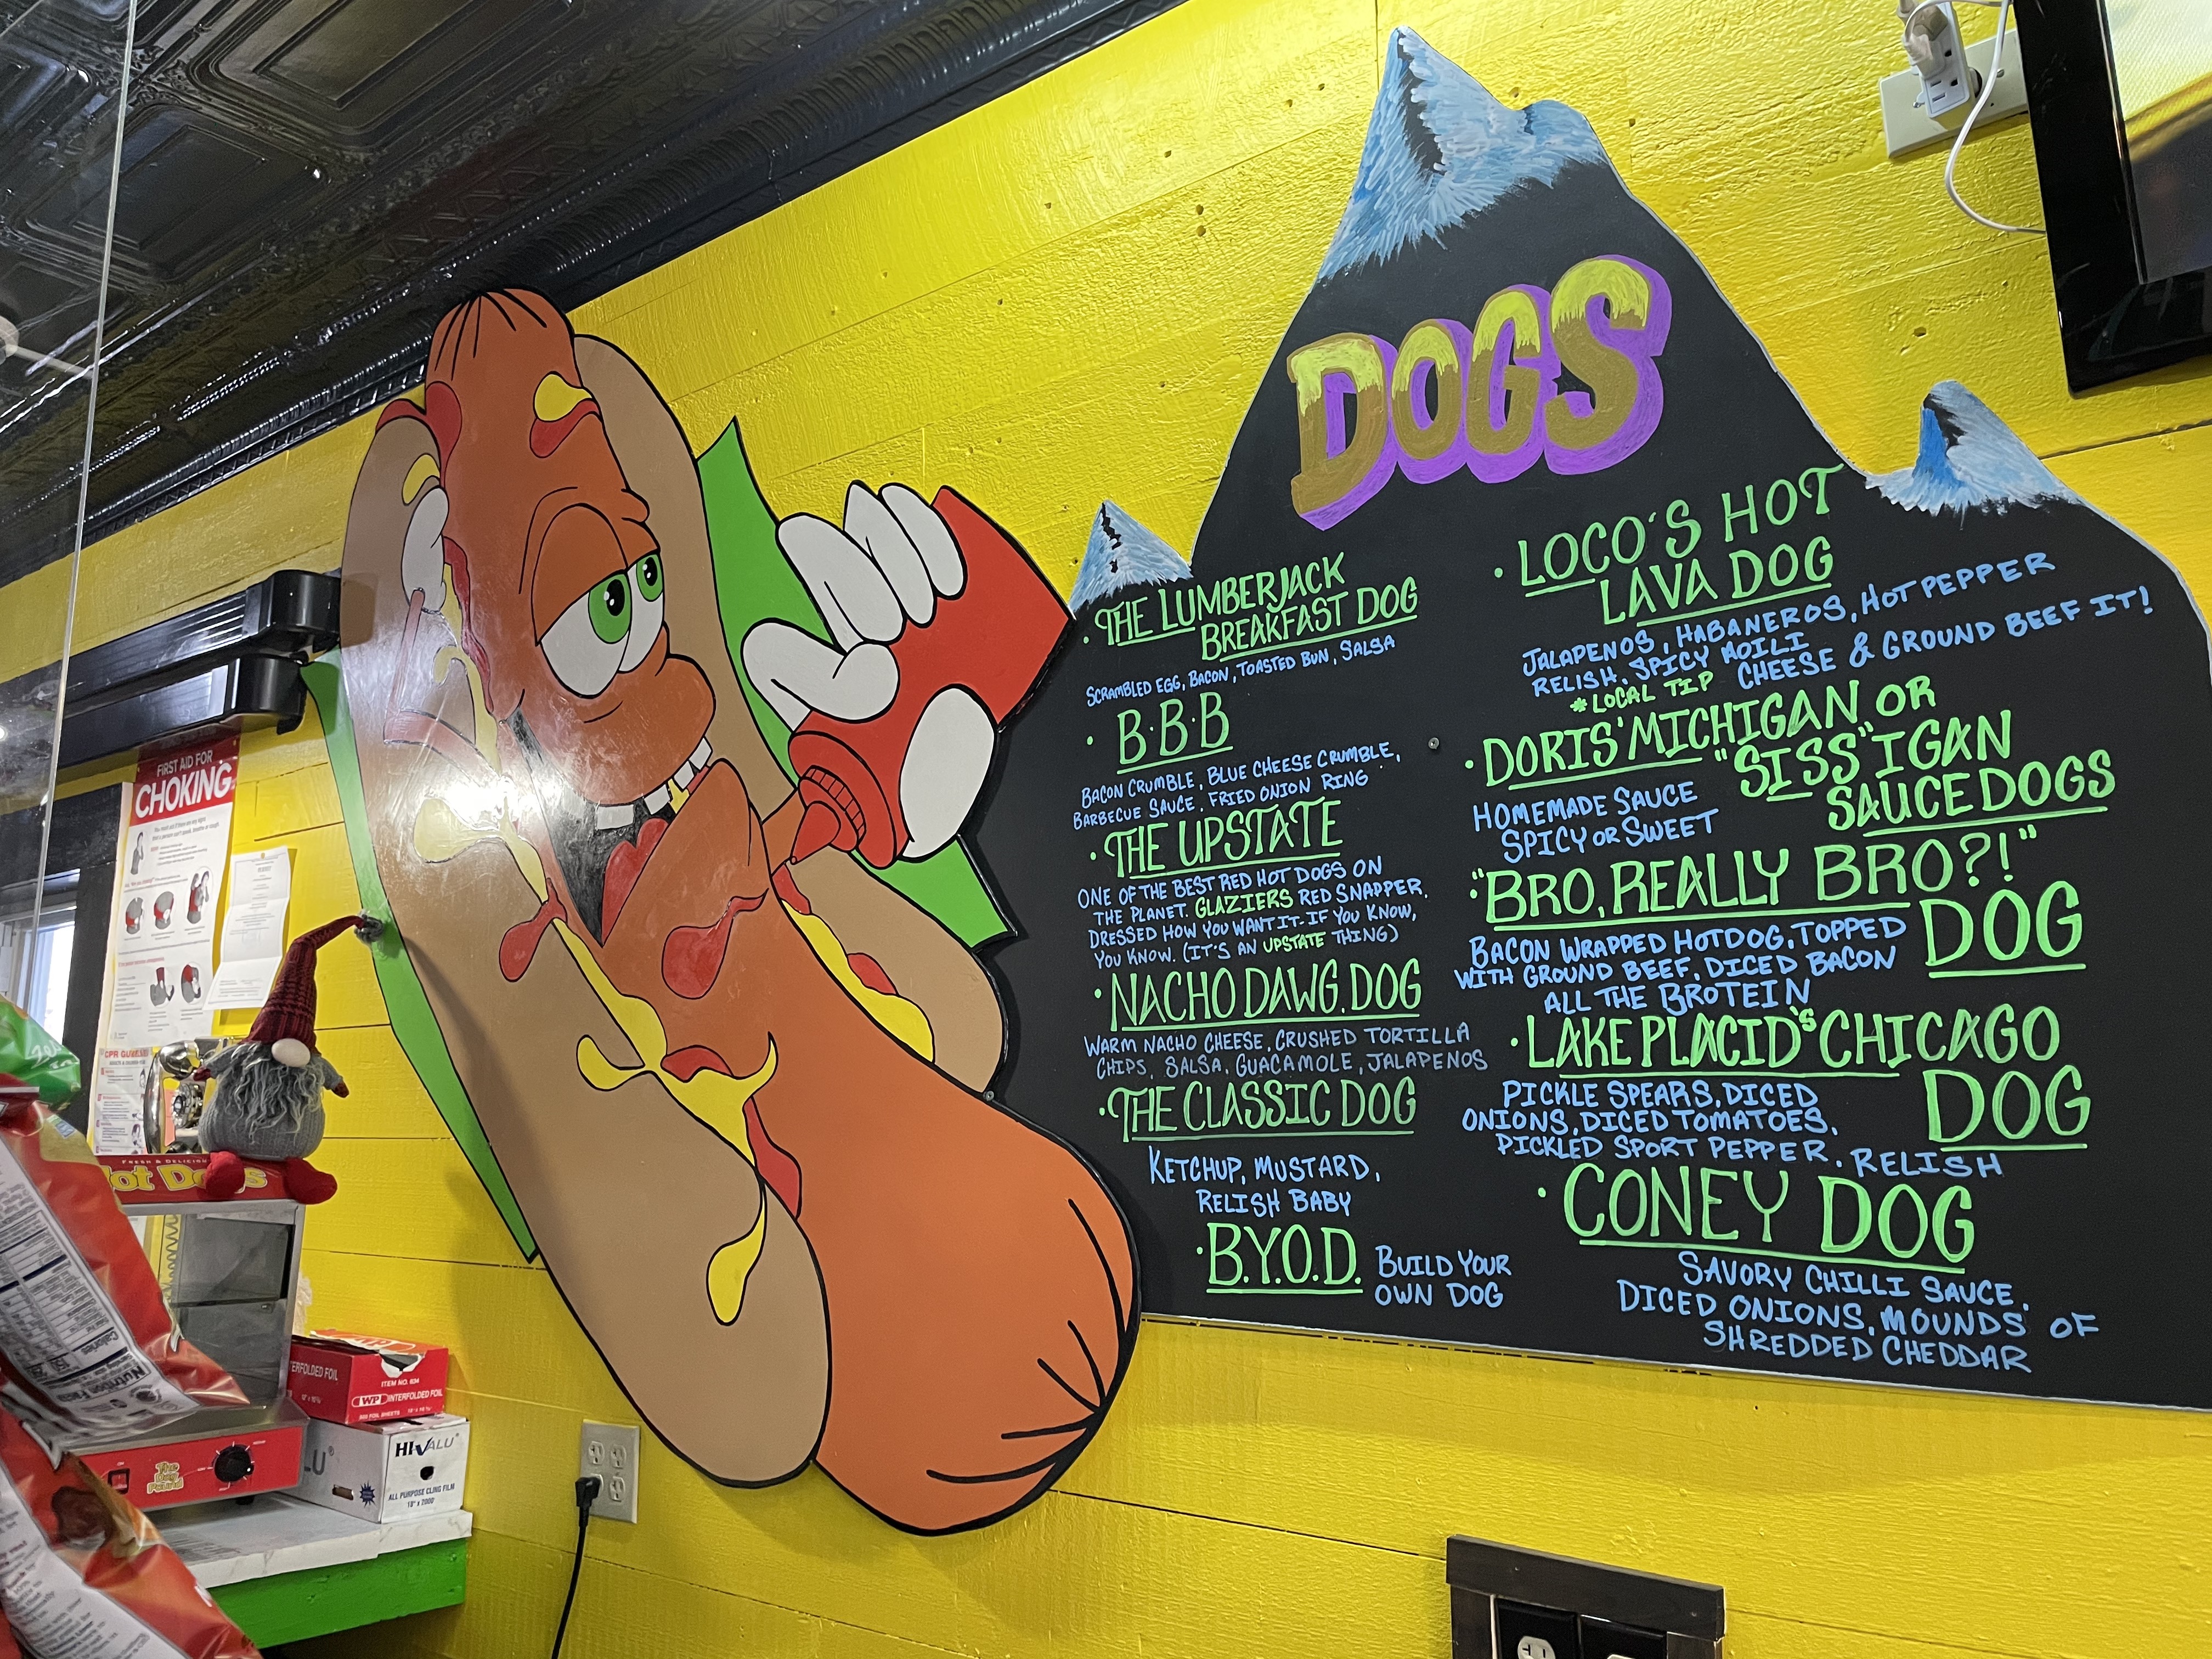 Cocoa and Dough&#44; Co.'s hot dog menu&#44; shaped like a mountain.